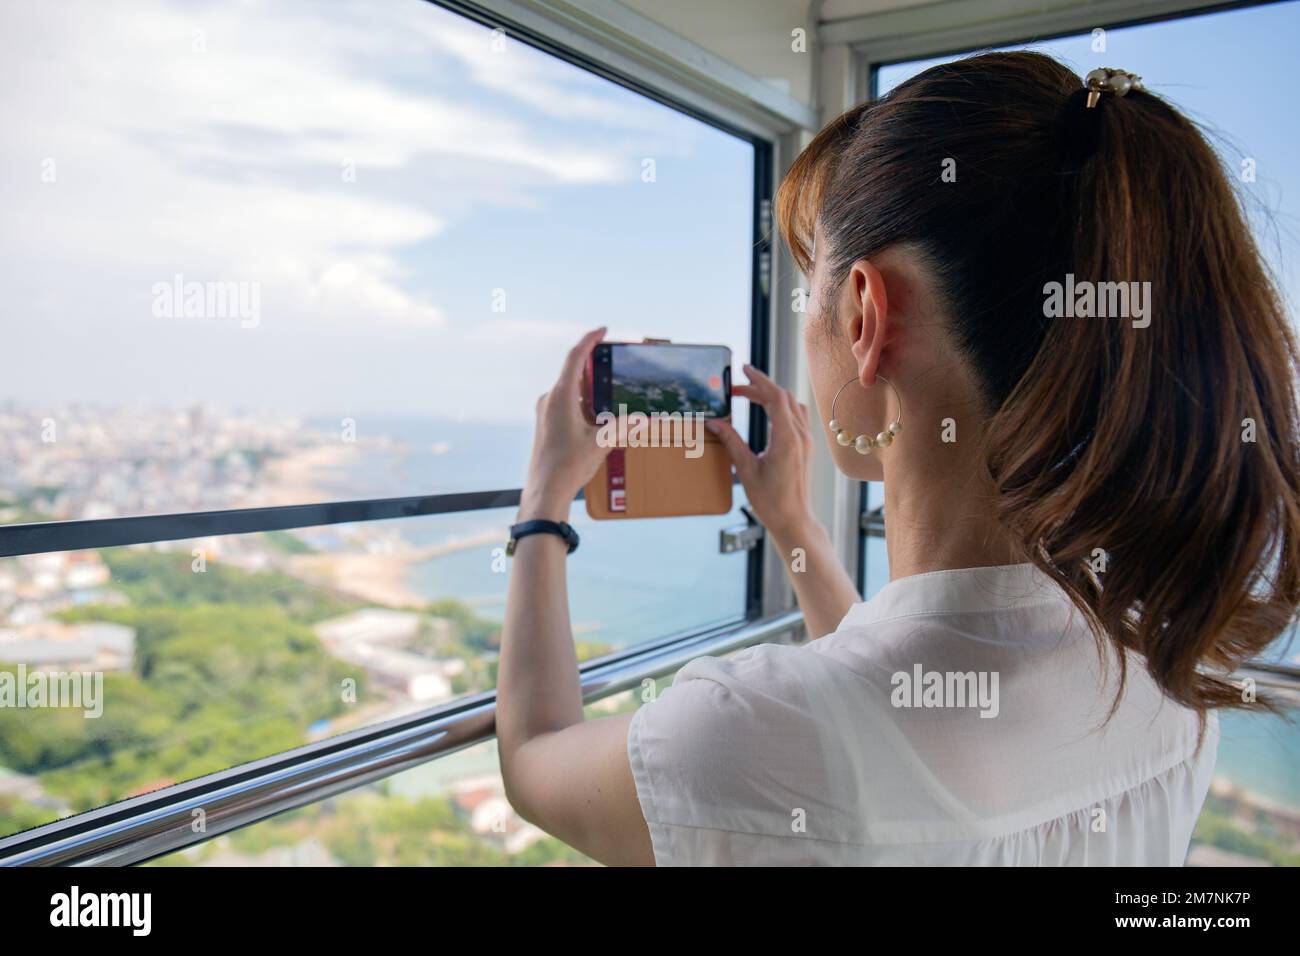 Eine reife japanische Frau, die mit ihrem Mobiltelefon Fotos von einer Seilbahn-Kabine der Stadt und der Landschaft darunter machte. Stockfoto